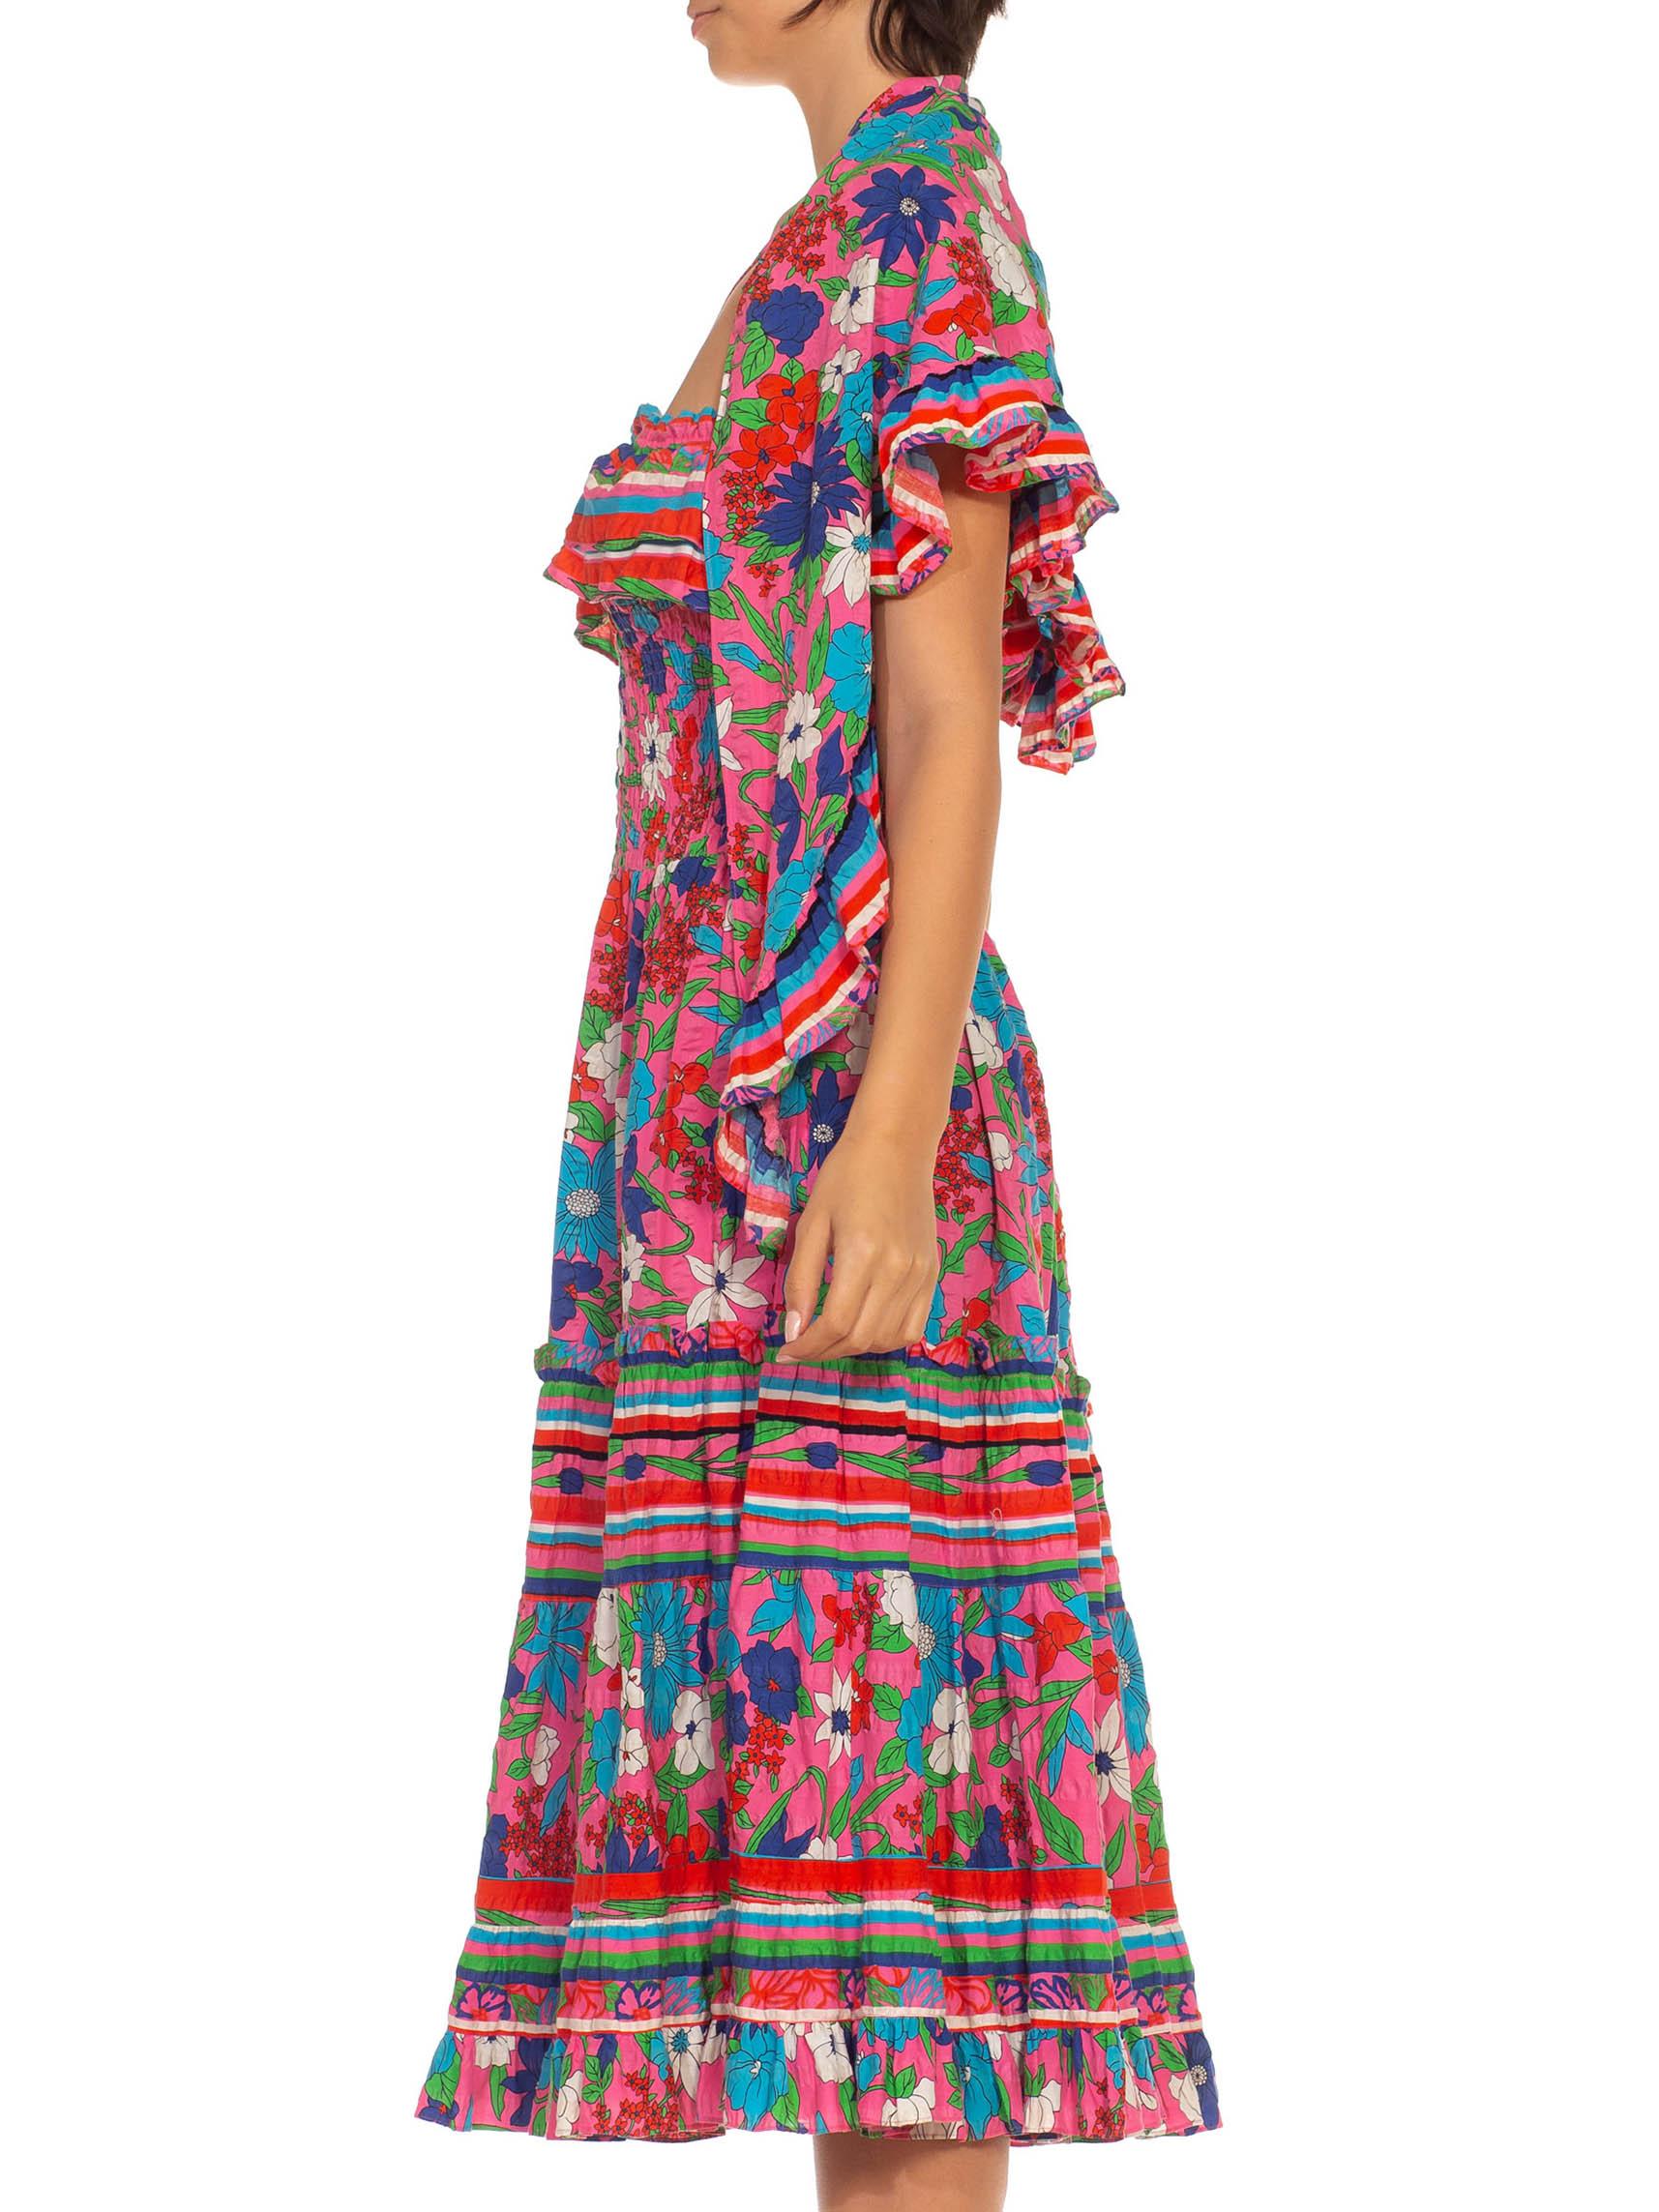 1970S DIANE FREIS Rosa & Blau Baumwolle Streifen Floral Smocked Kleid mit passendem Schal Holzperlen